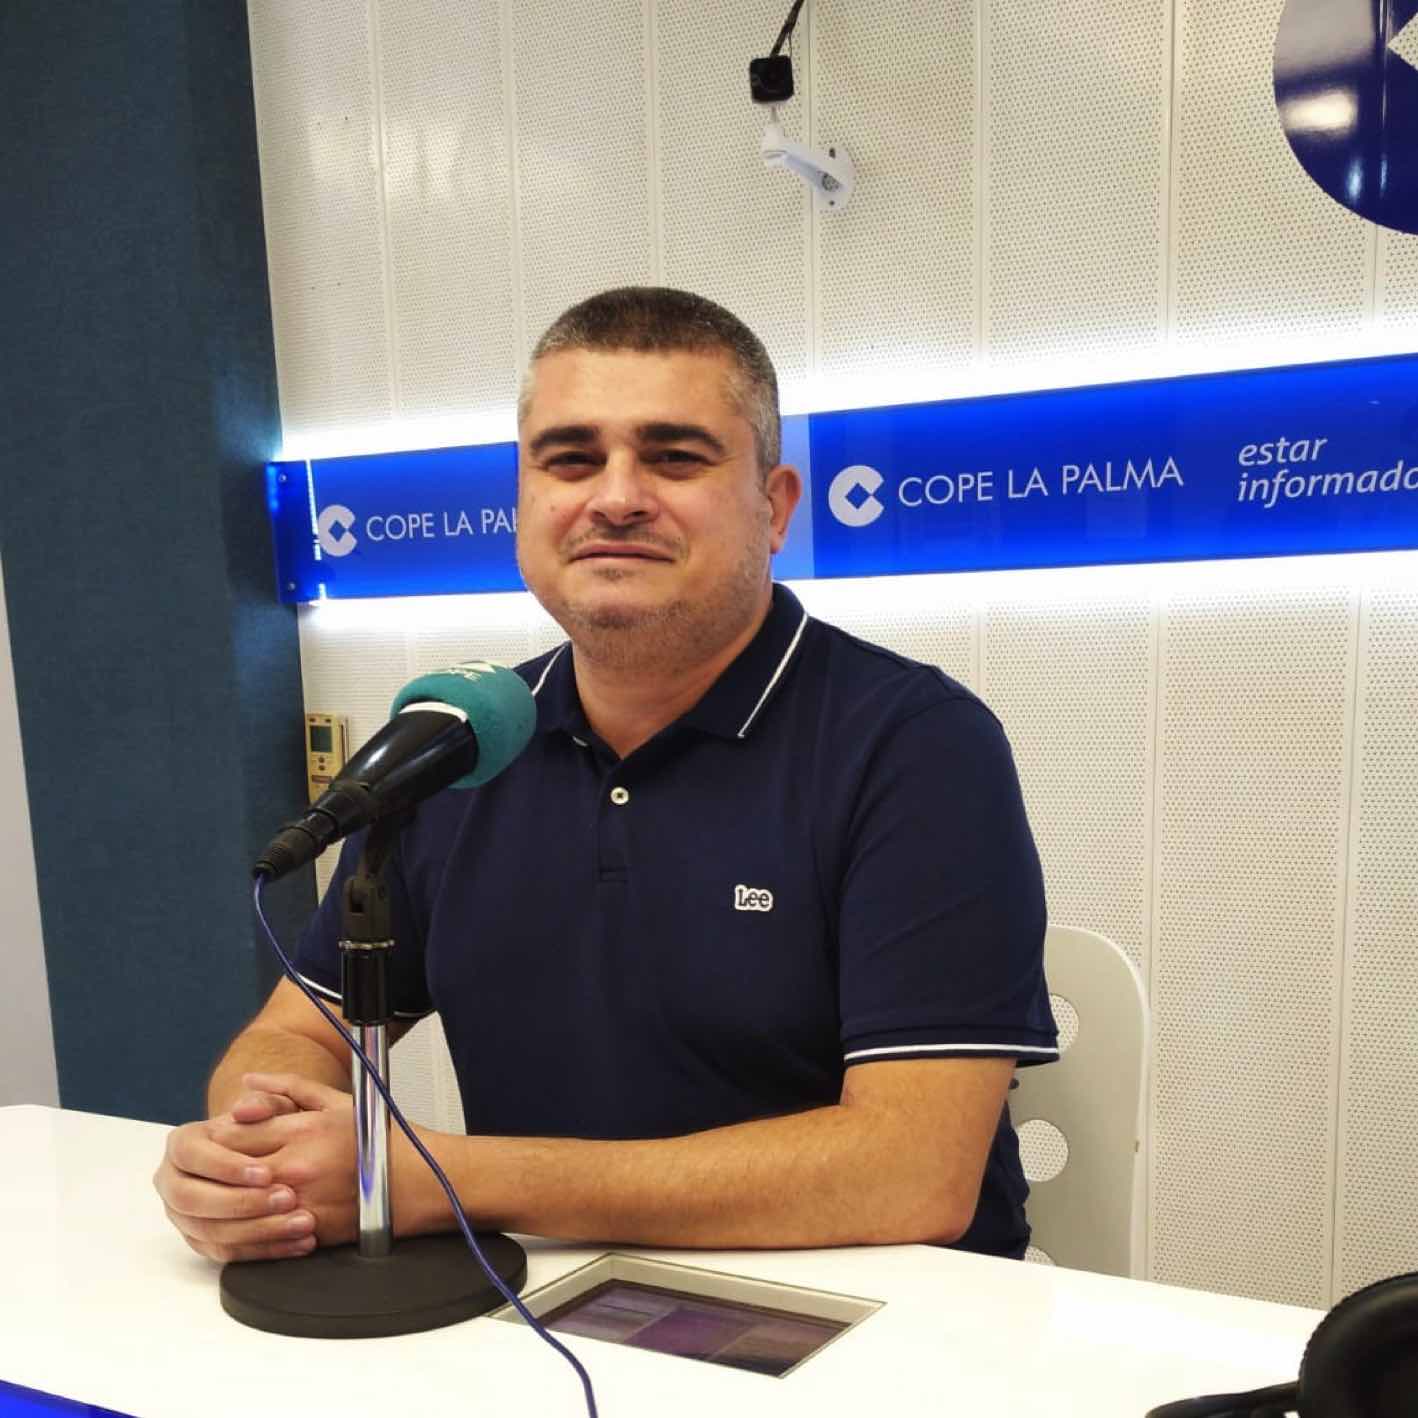 Antonio González: “El viernes celebramos un encuentro astronómico, que va destinado a todos los públicos”